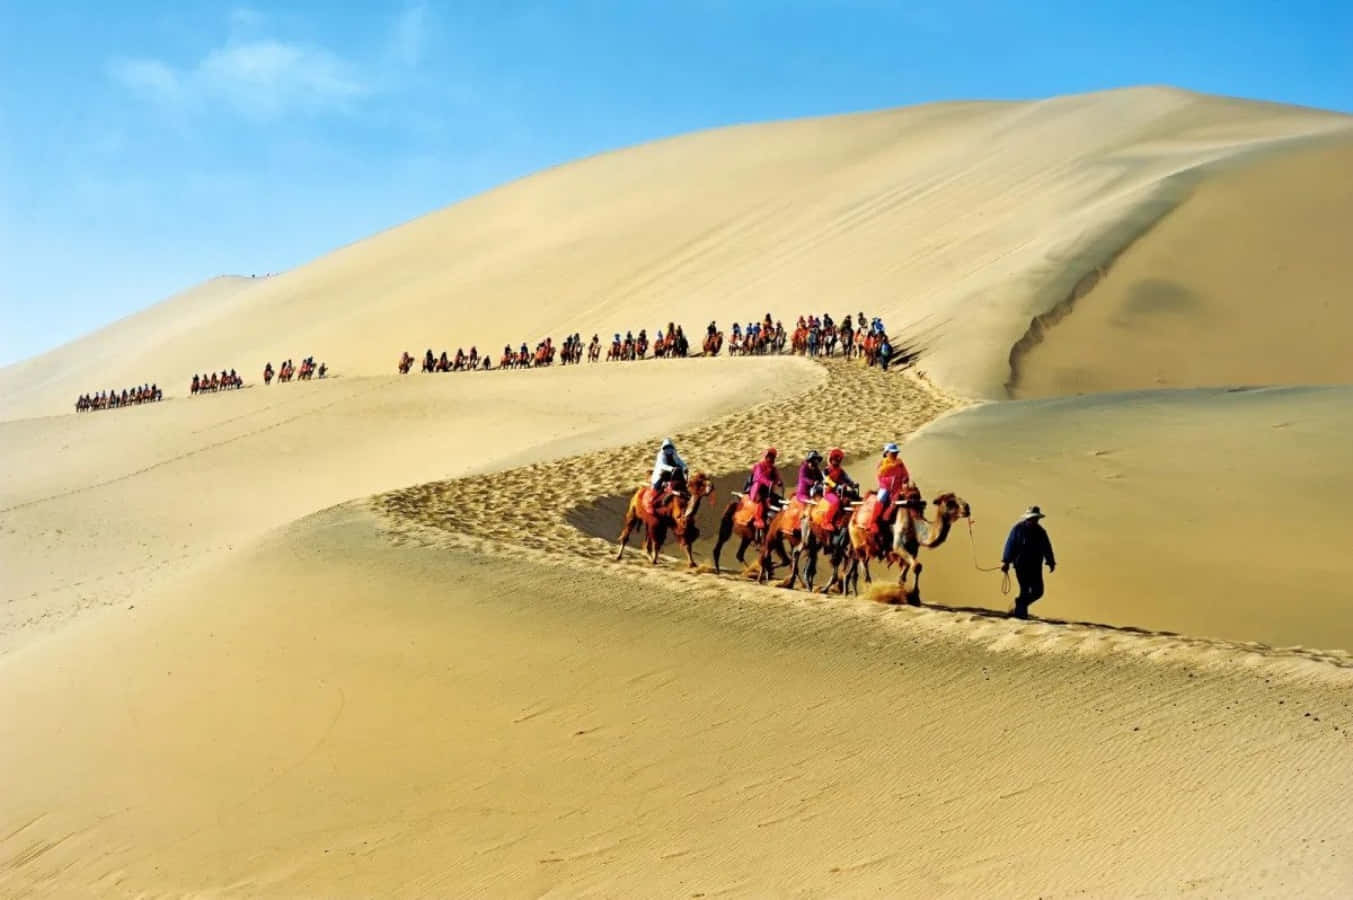 Ungrupo De Personas Montando Camellos En Un Desierto.